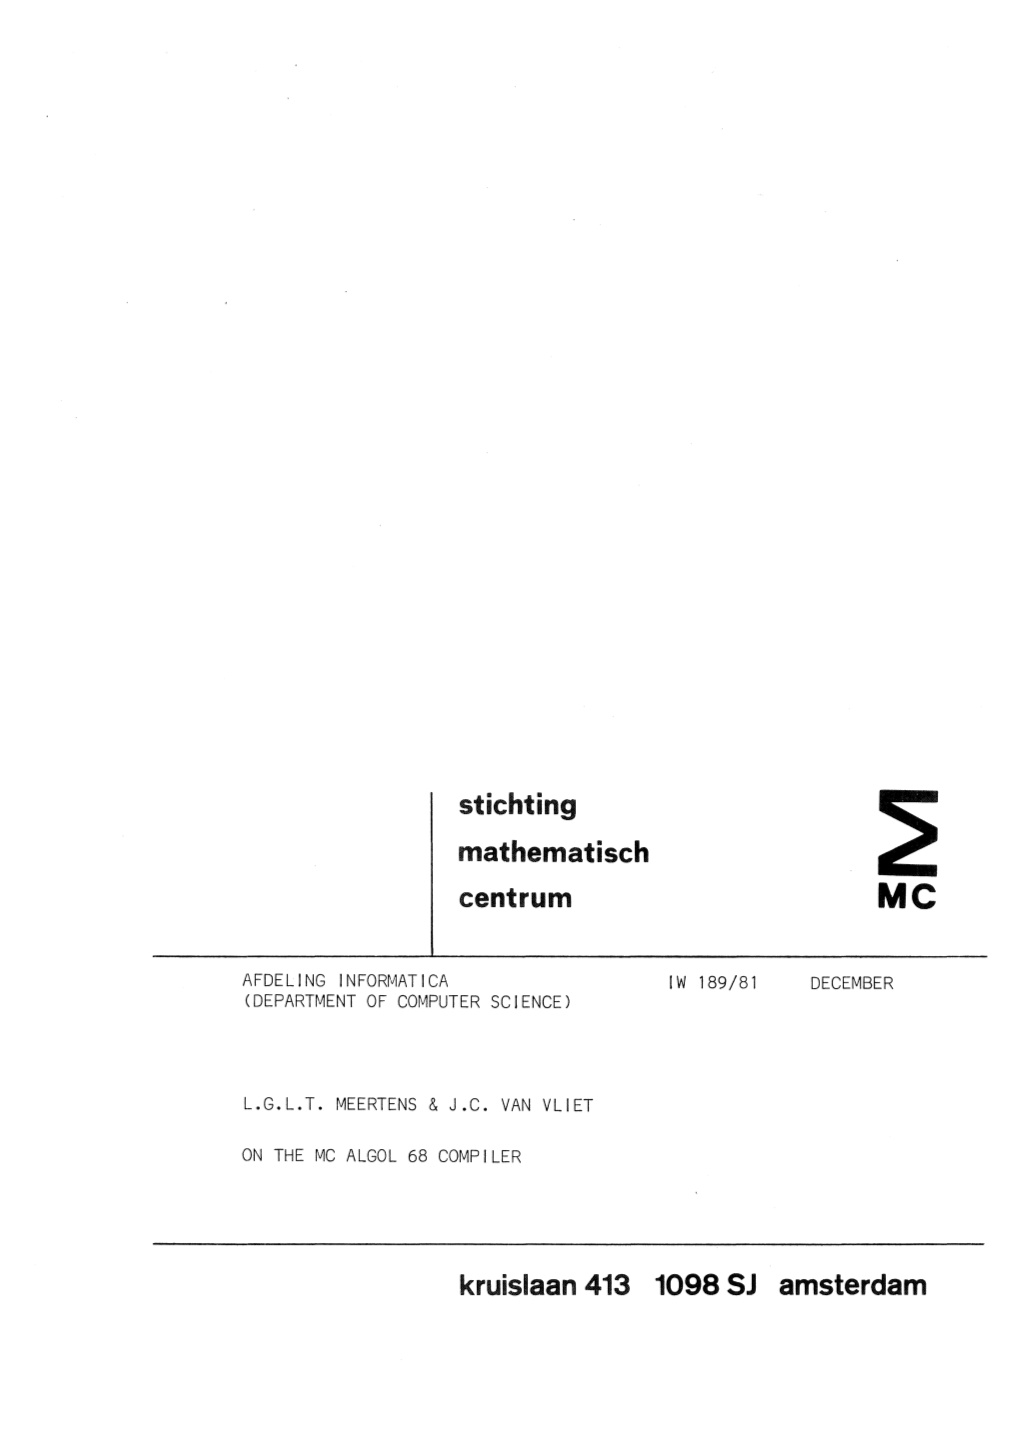 Stichting Mathematisch Centrum Kruislaan 413 1098 SJ Amsterdam